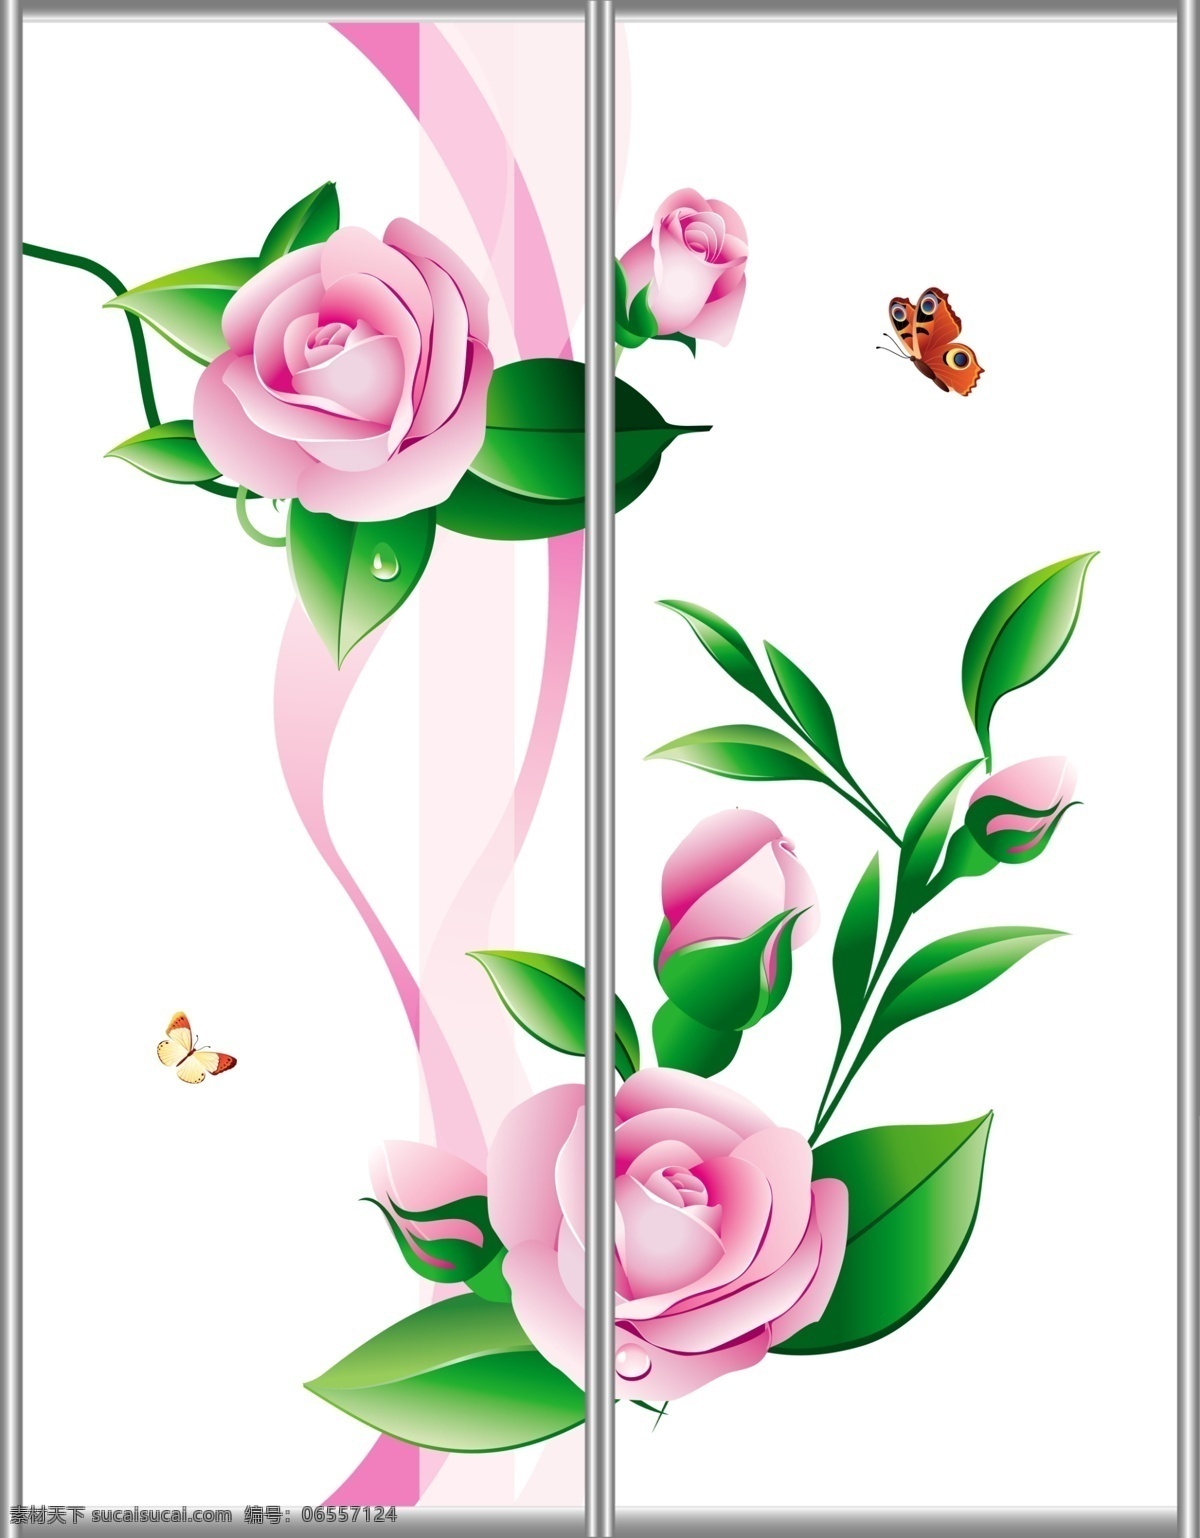 移门 广告设计模板 蝴蝶 花朵 花骨朵 绿叶 玫瑰 曲线 移门源文件 移门图案 源文件 家居装饰素材